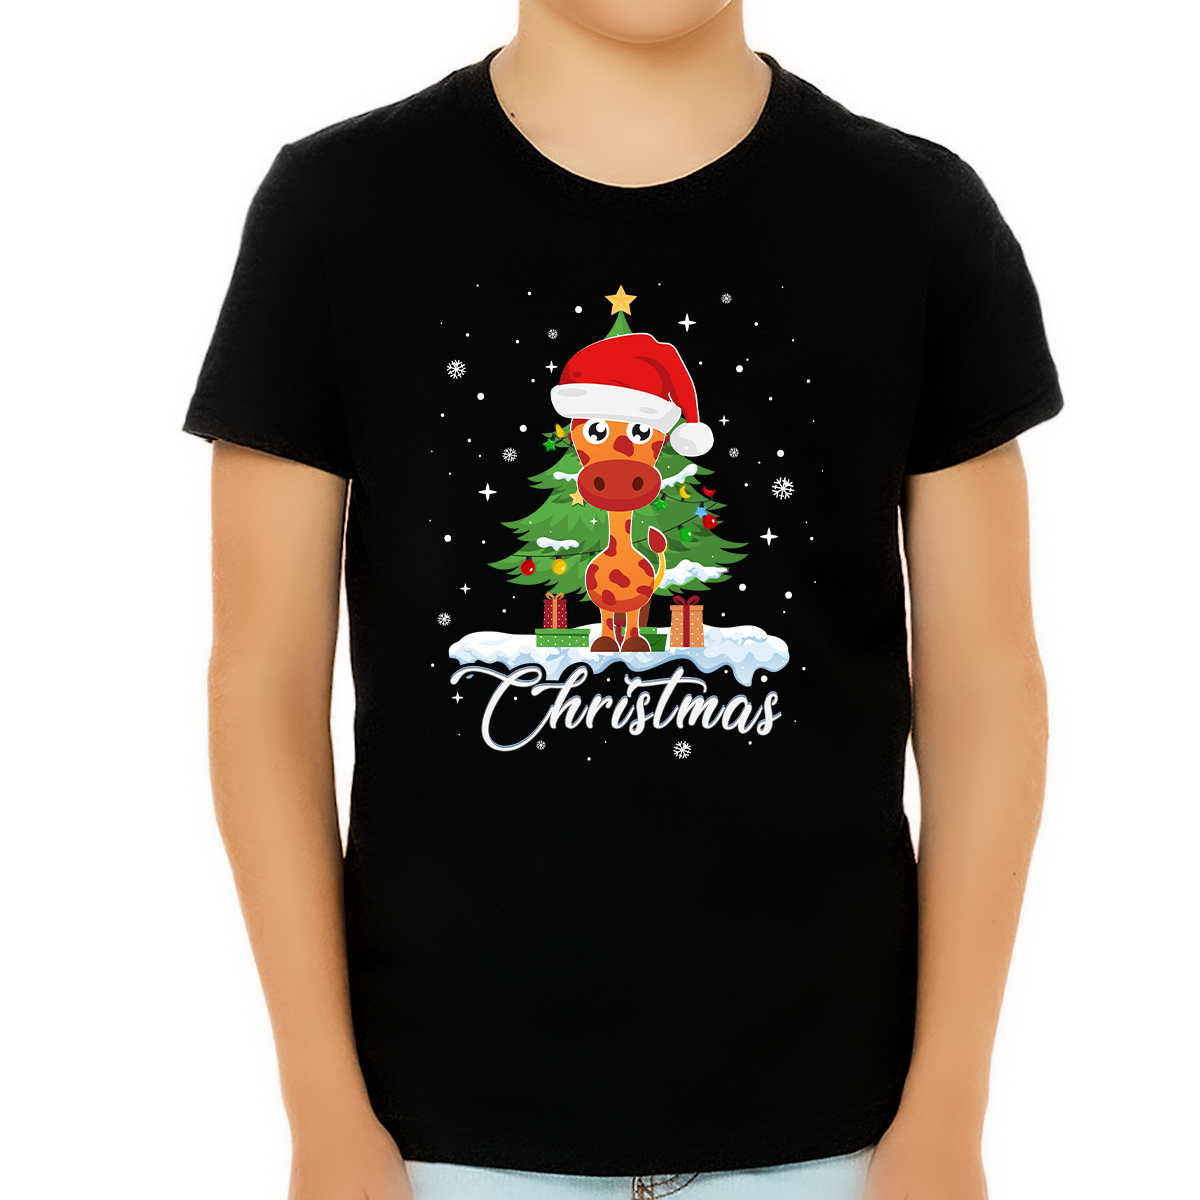 Boys Christmas Shirt Giraffe Christmas Shirts for Boys Cute Christmas Shirts for Kids